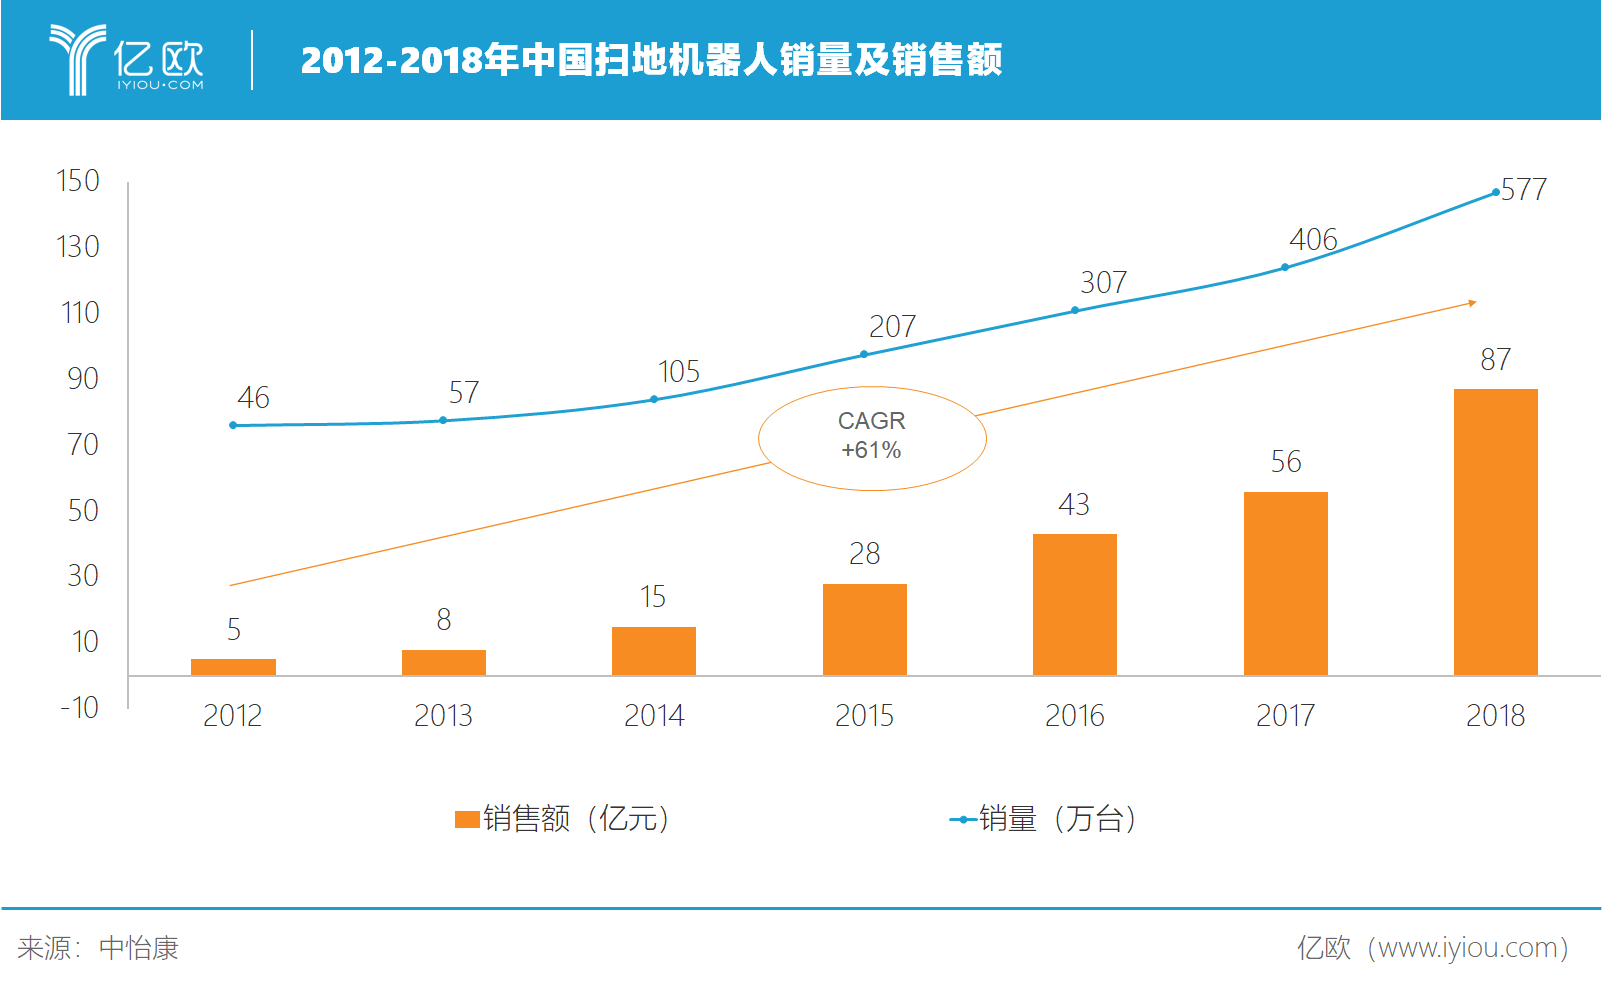 2012-2018年中国扫地机器人销量及销售额